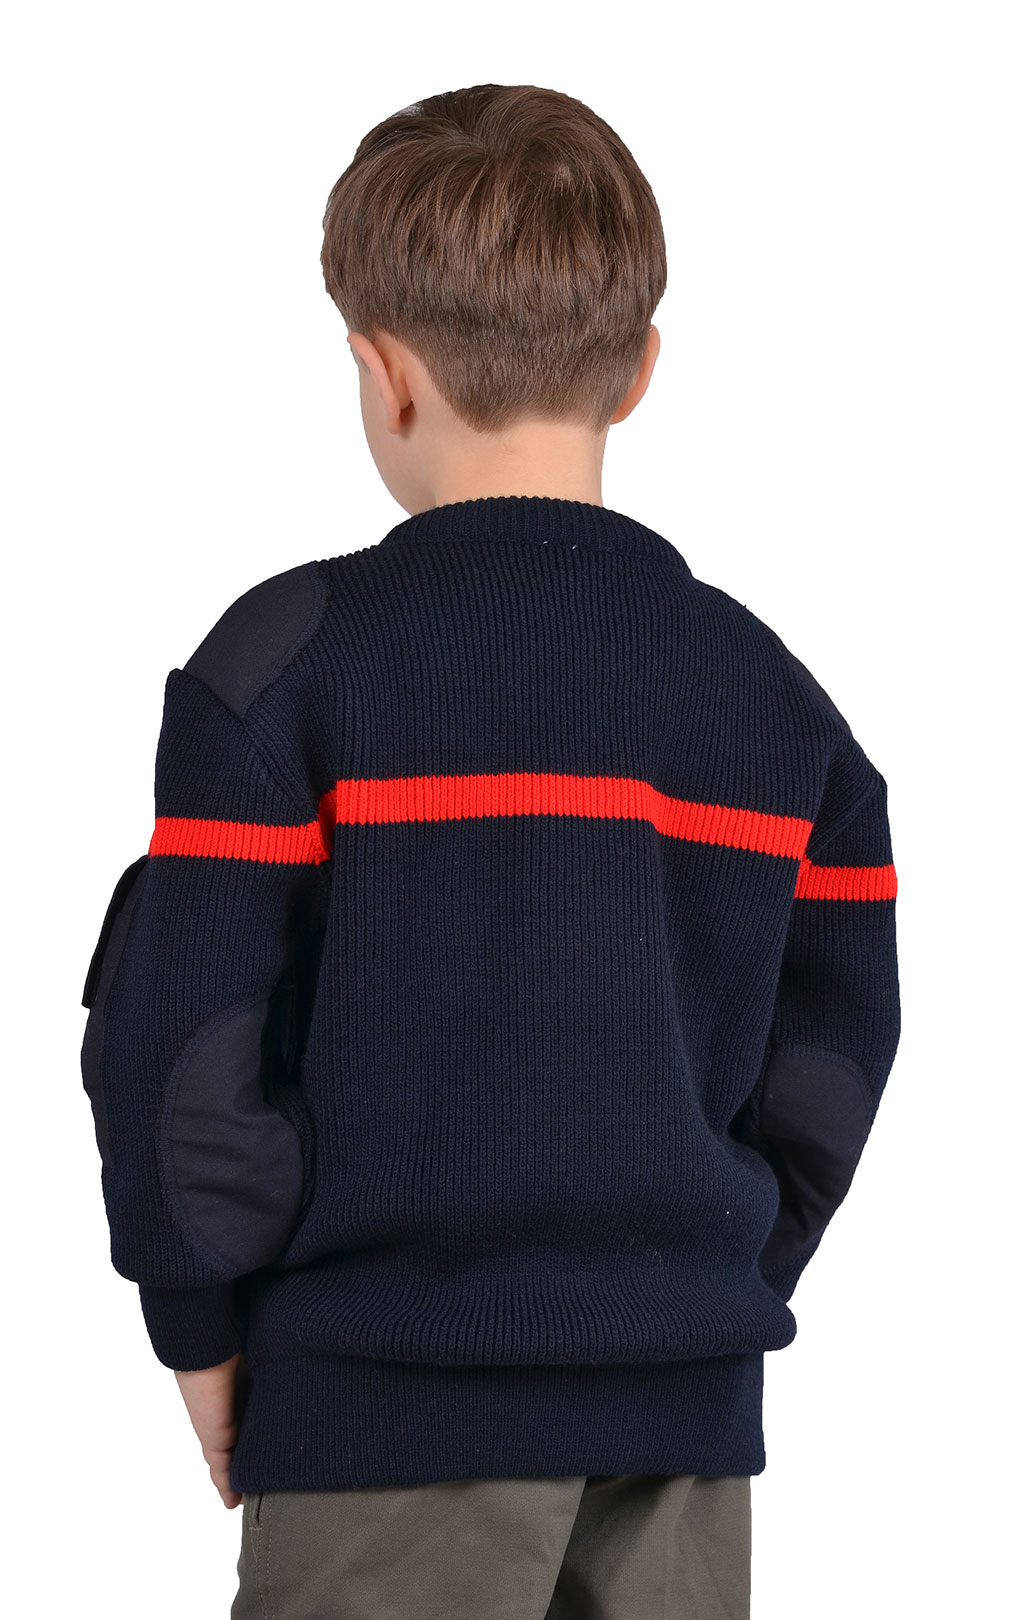 Детский свитер J.S.P. полиамид/акрил navy Франция